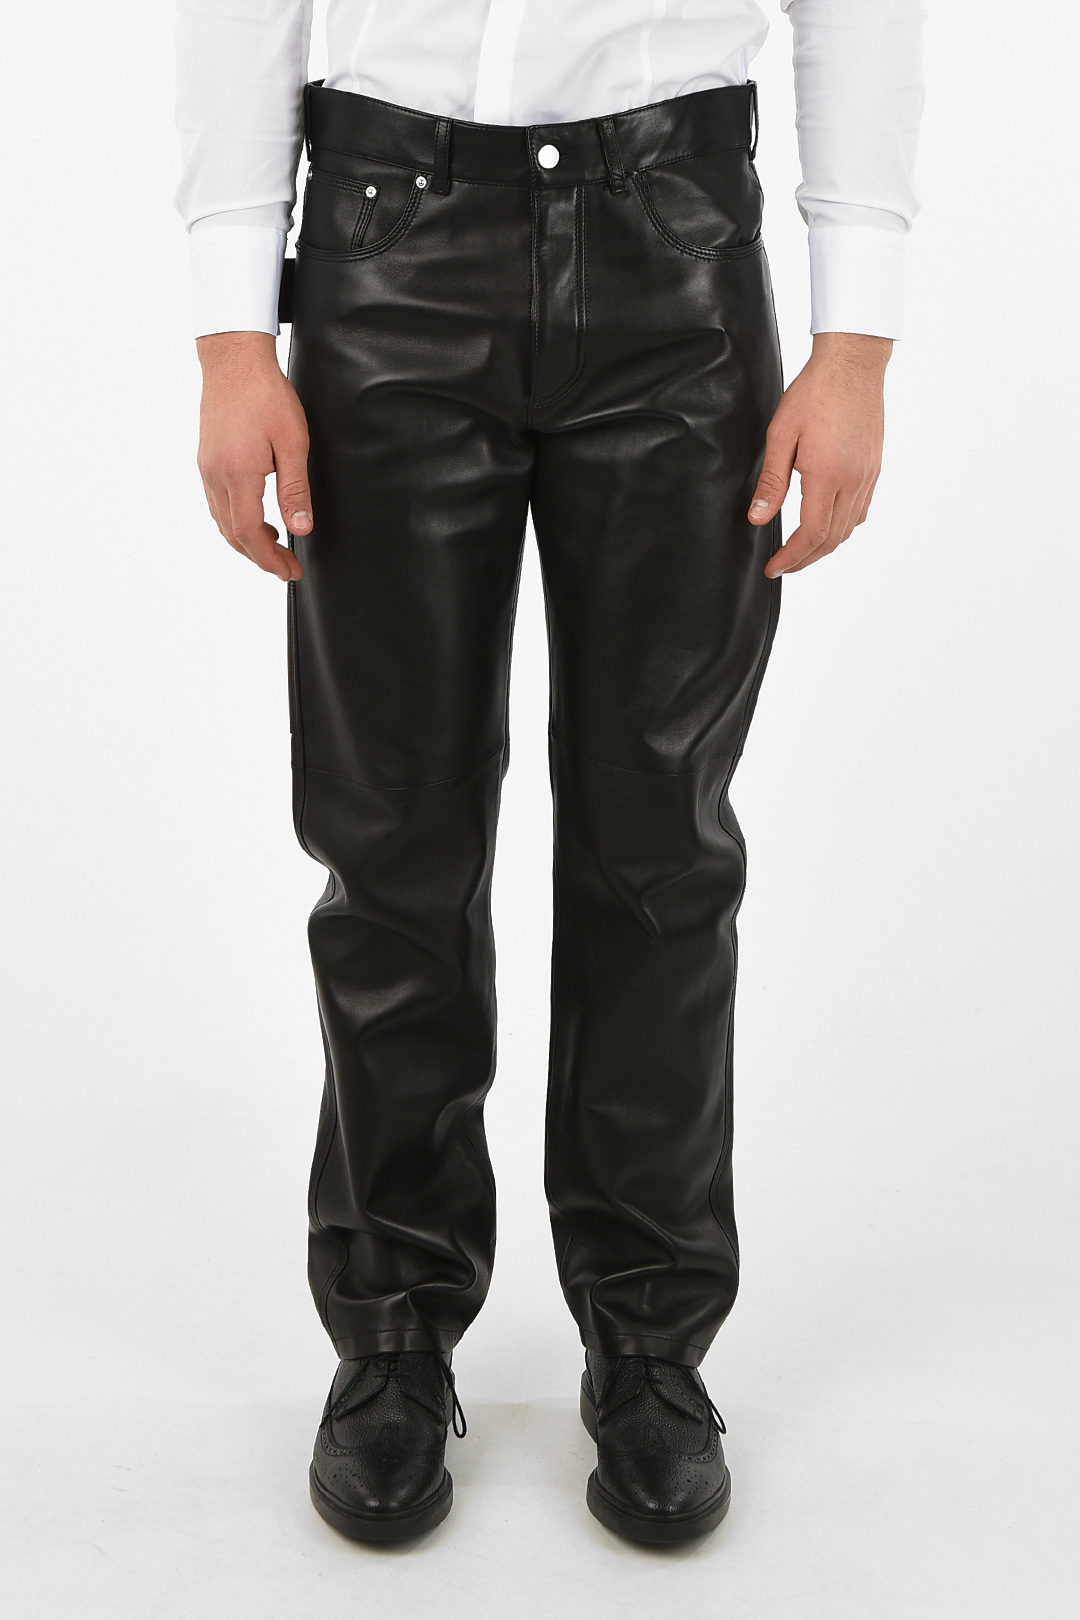 Bottega Veneta leather pants men - Glamood Outlet